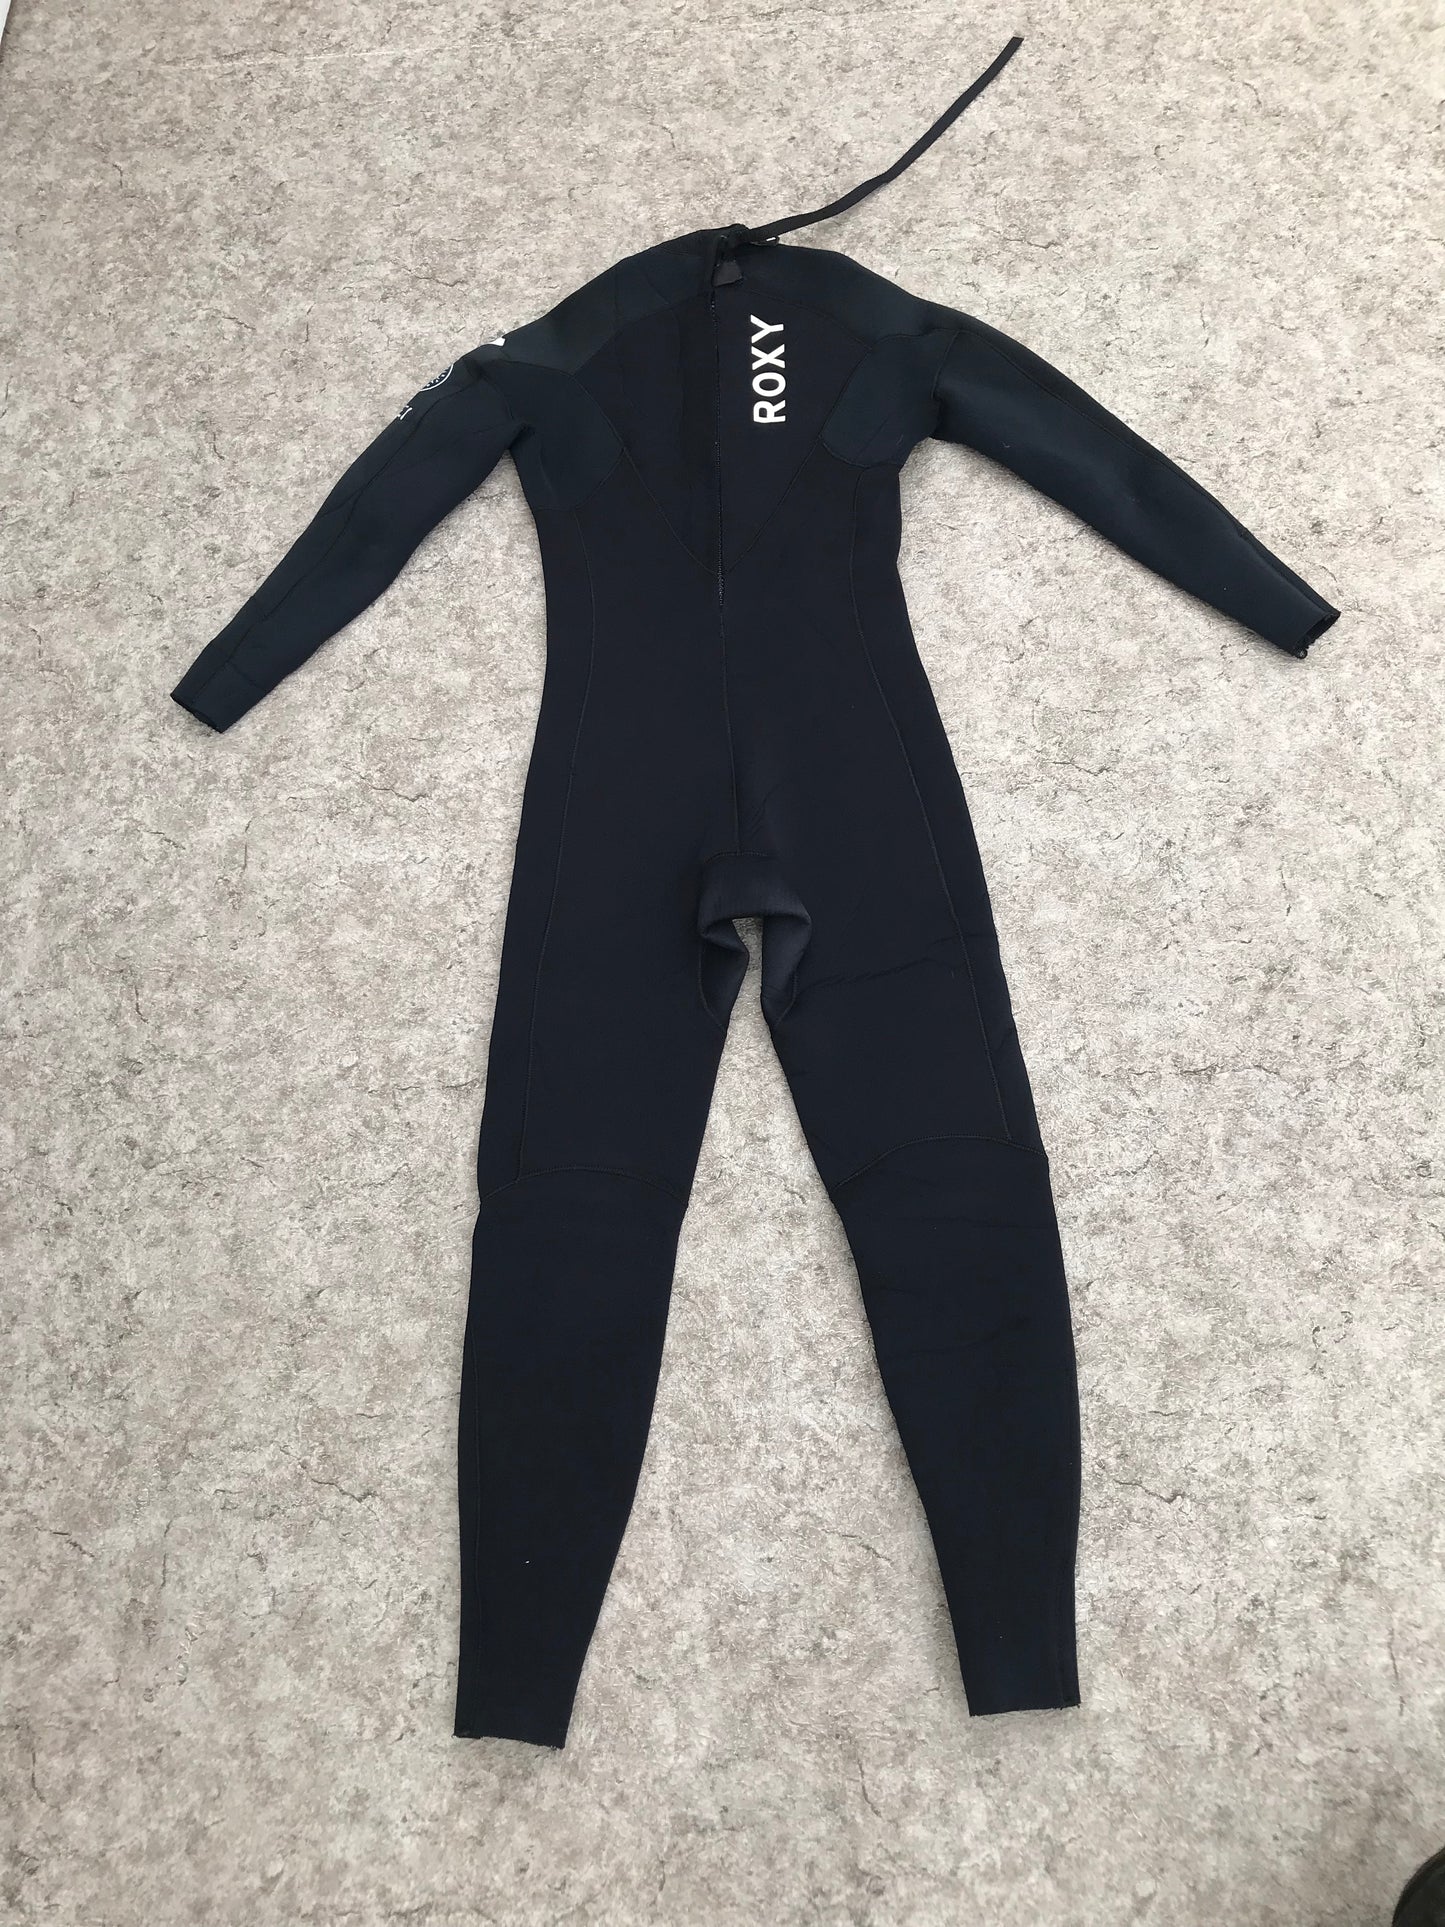 Wetsuit Ladies Full Size 10 Roxy 4-3 mm Neoprene Surf Black Minor Wear